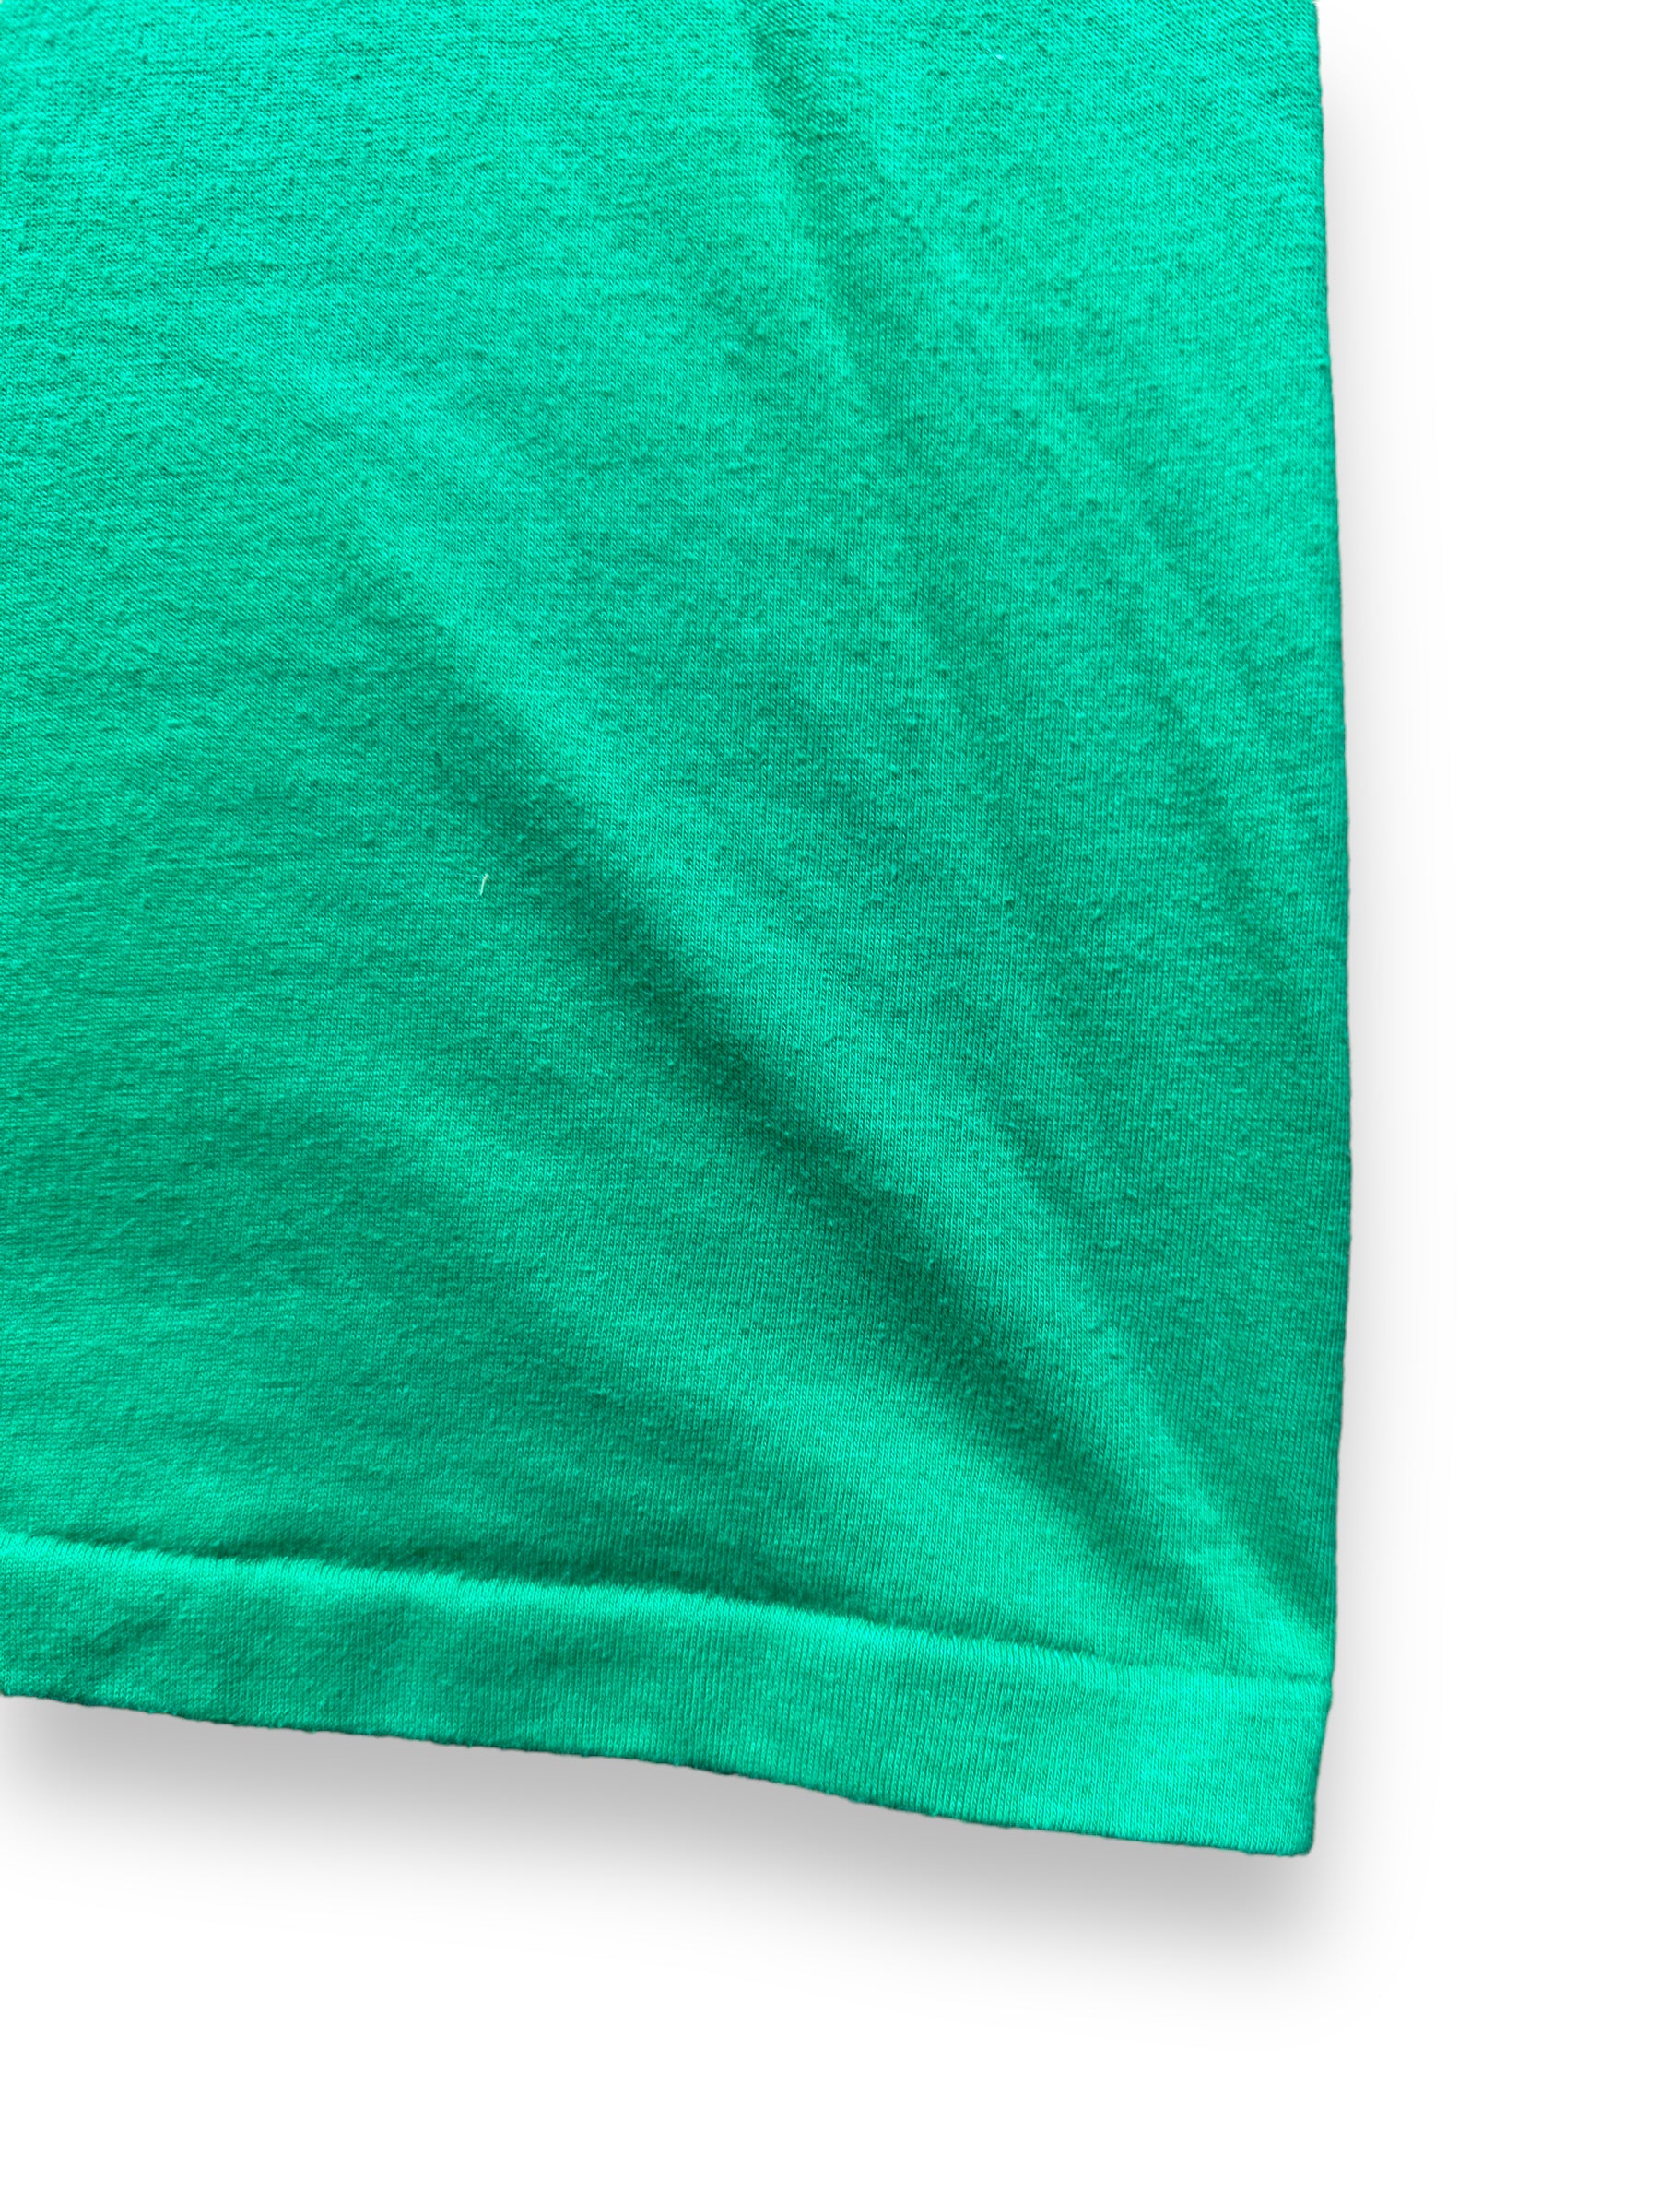 Single Stitch Hem on Vintage Green Hawaii Graphic Tee SZ M | Vintage T-Shirts Seattle | Barn Owl Vintage Tees Seattle